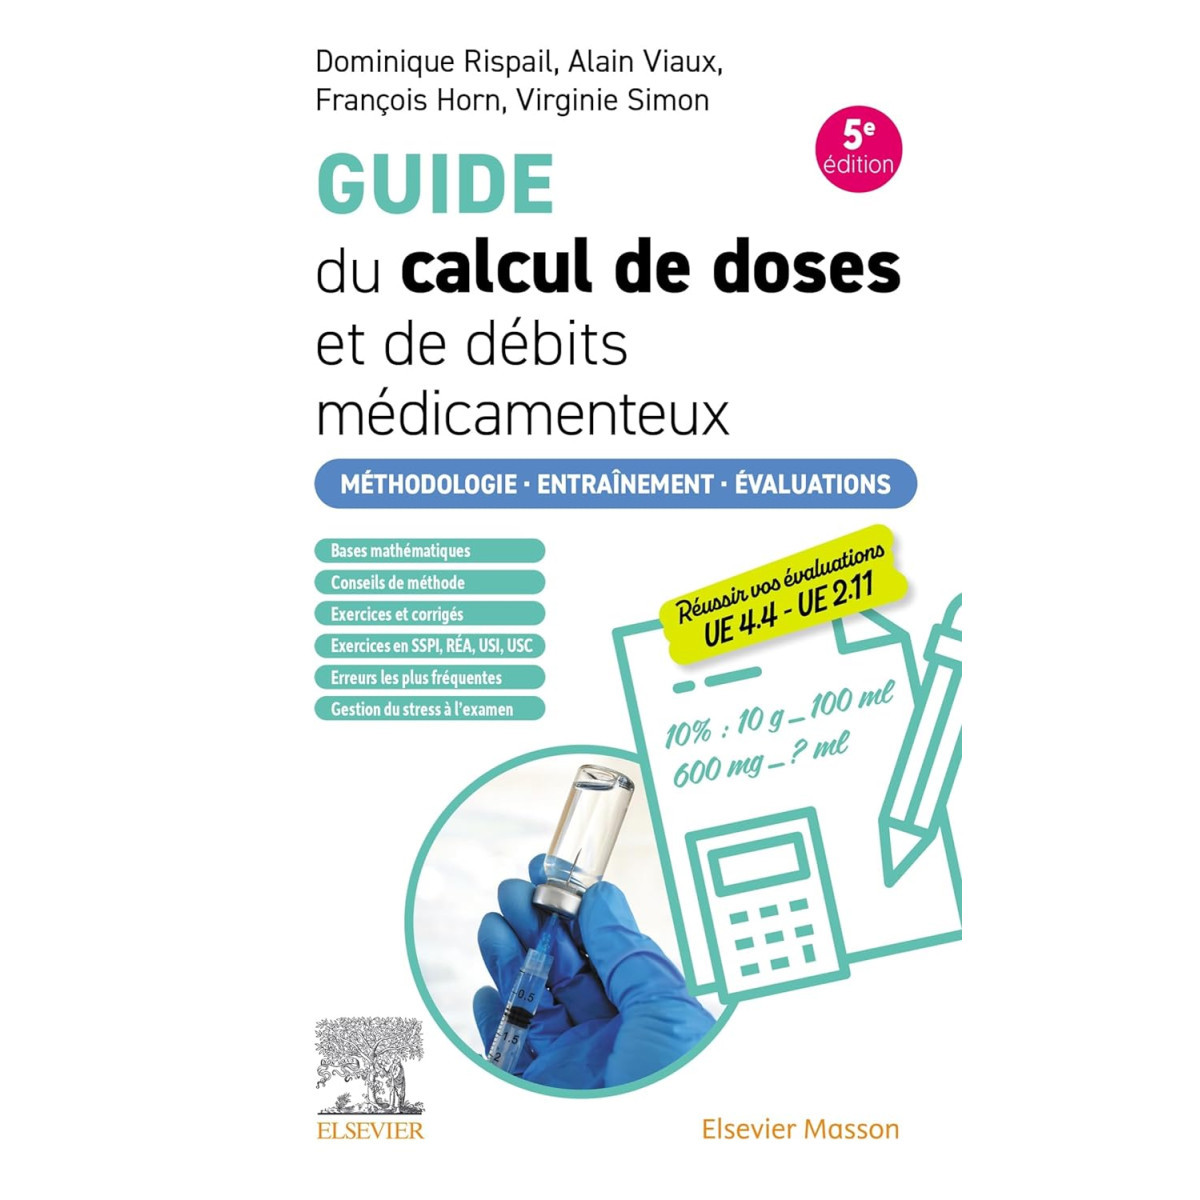 Guide du calcul de doses et de débits médicamenteux - Méthodologie. Entraînement. Evaluations